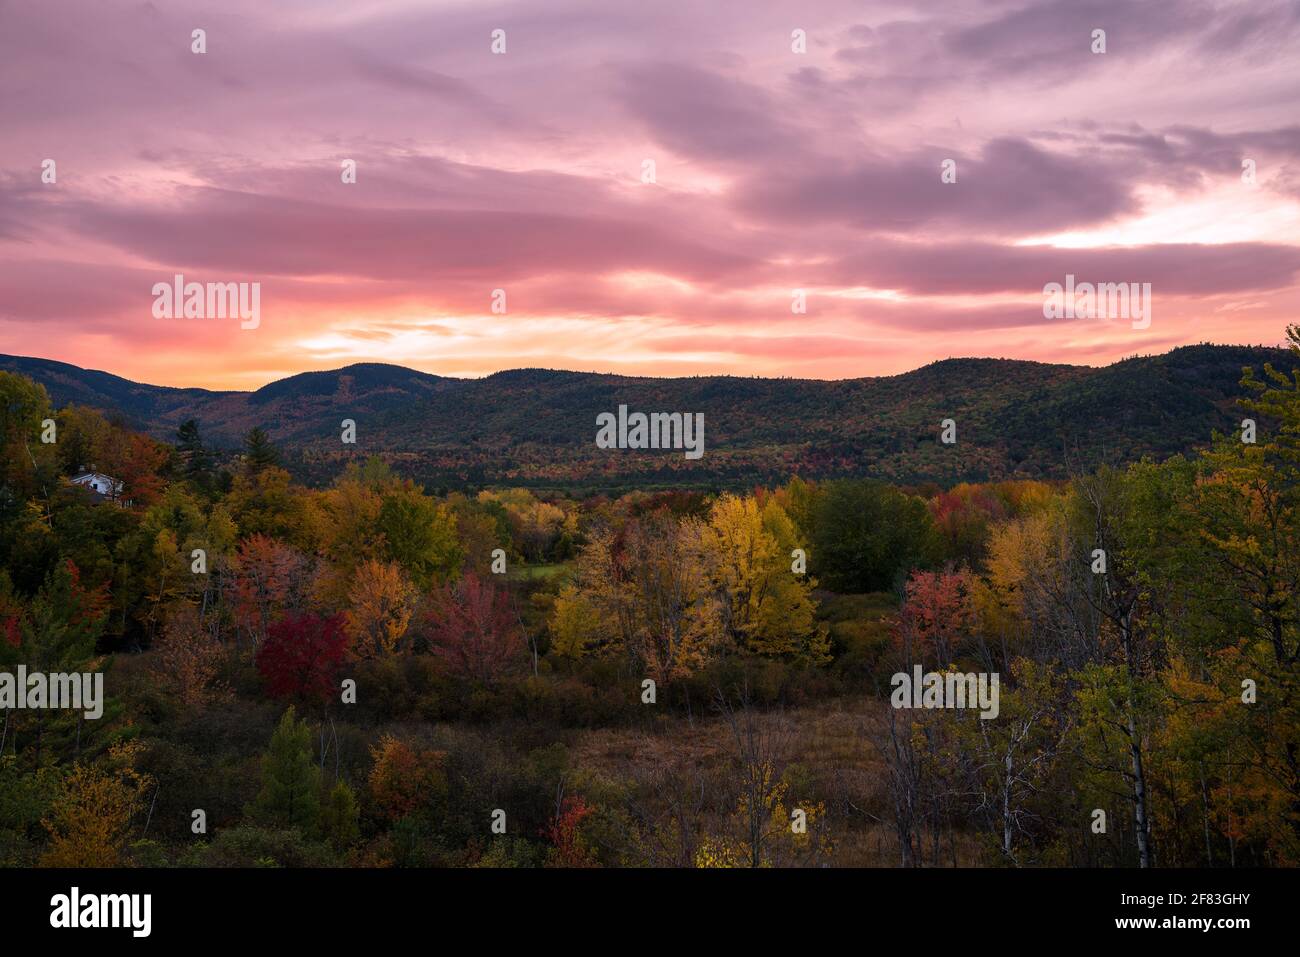 Espectacular puesta de sol otoñal sobre montañas de madera en el pico de follaje del otoño Foto de stock